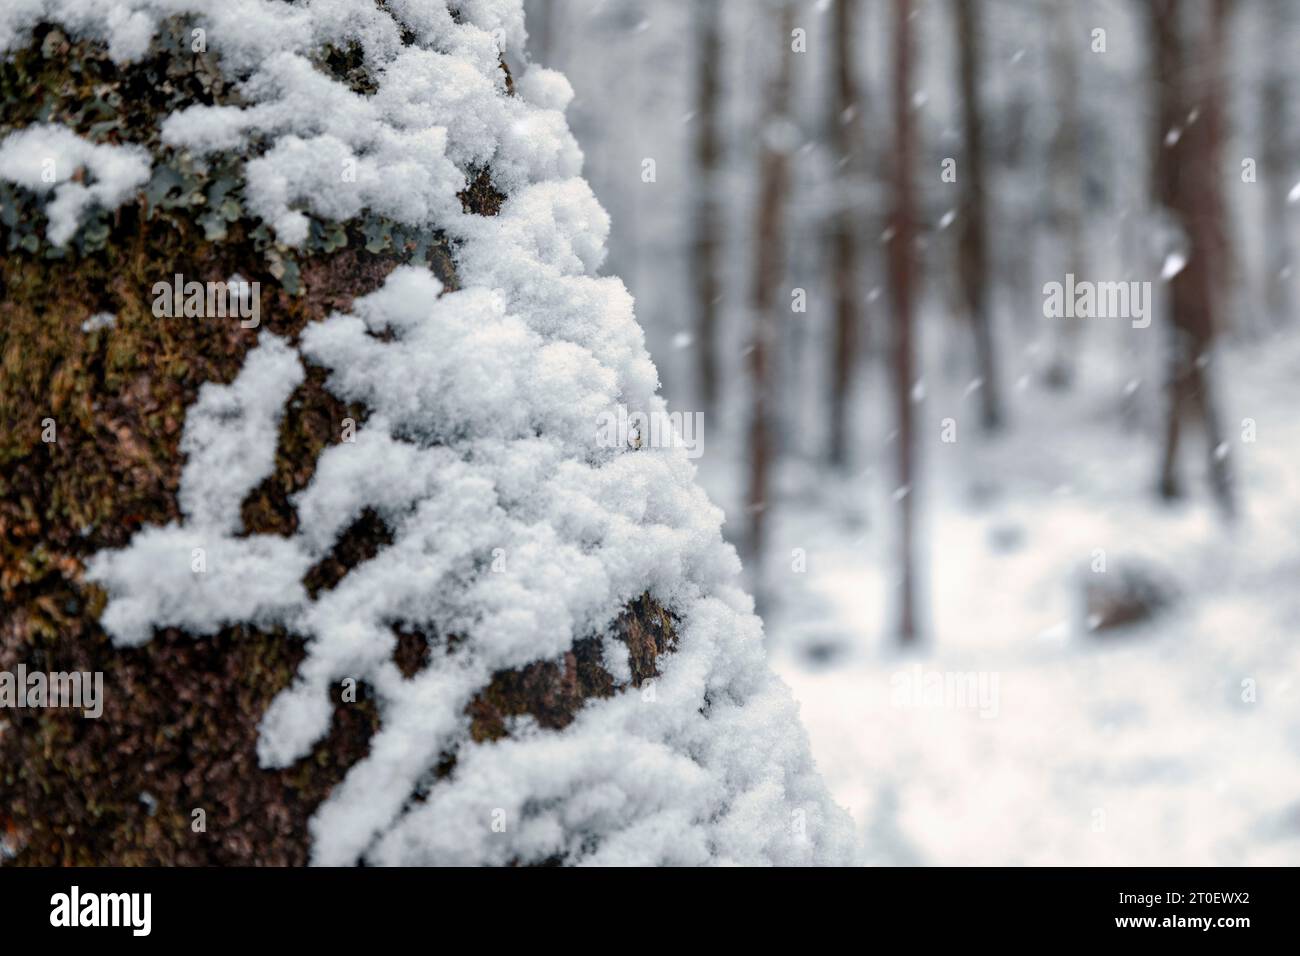 Italia, Veneto, provincia di Belluno, Dolomiti, alberi sotto la neve, foresta invernale di alberi decidui Foto Stock